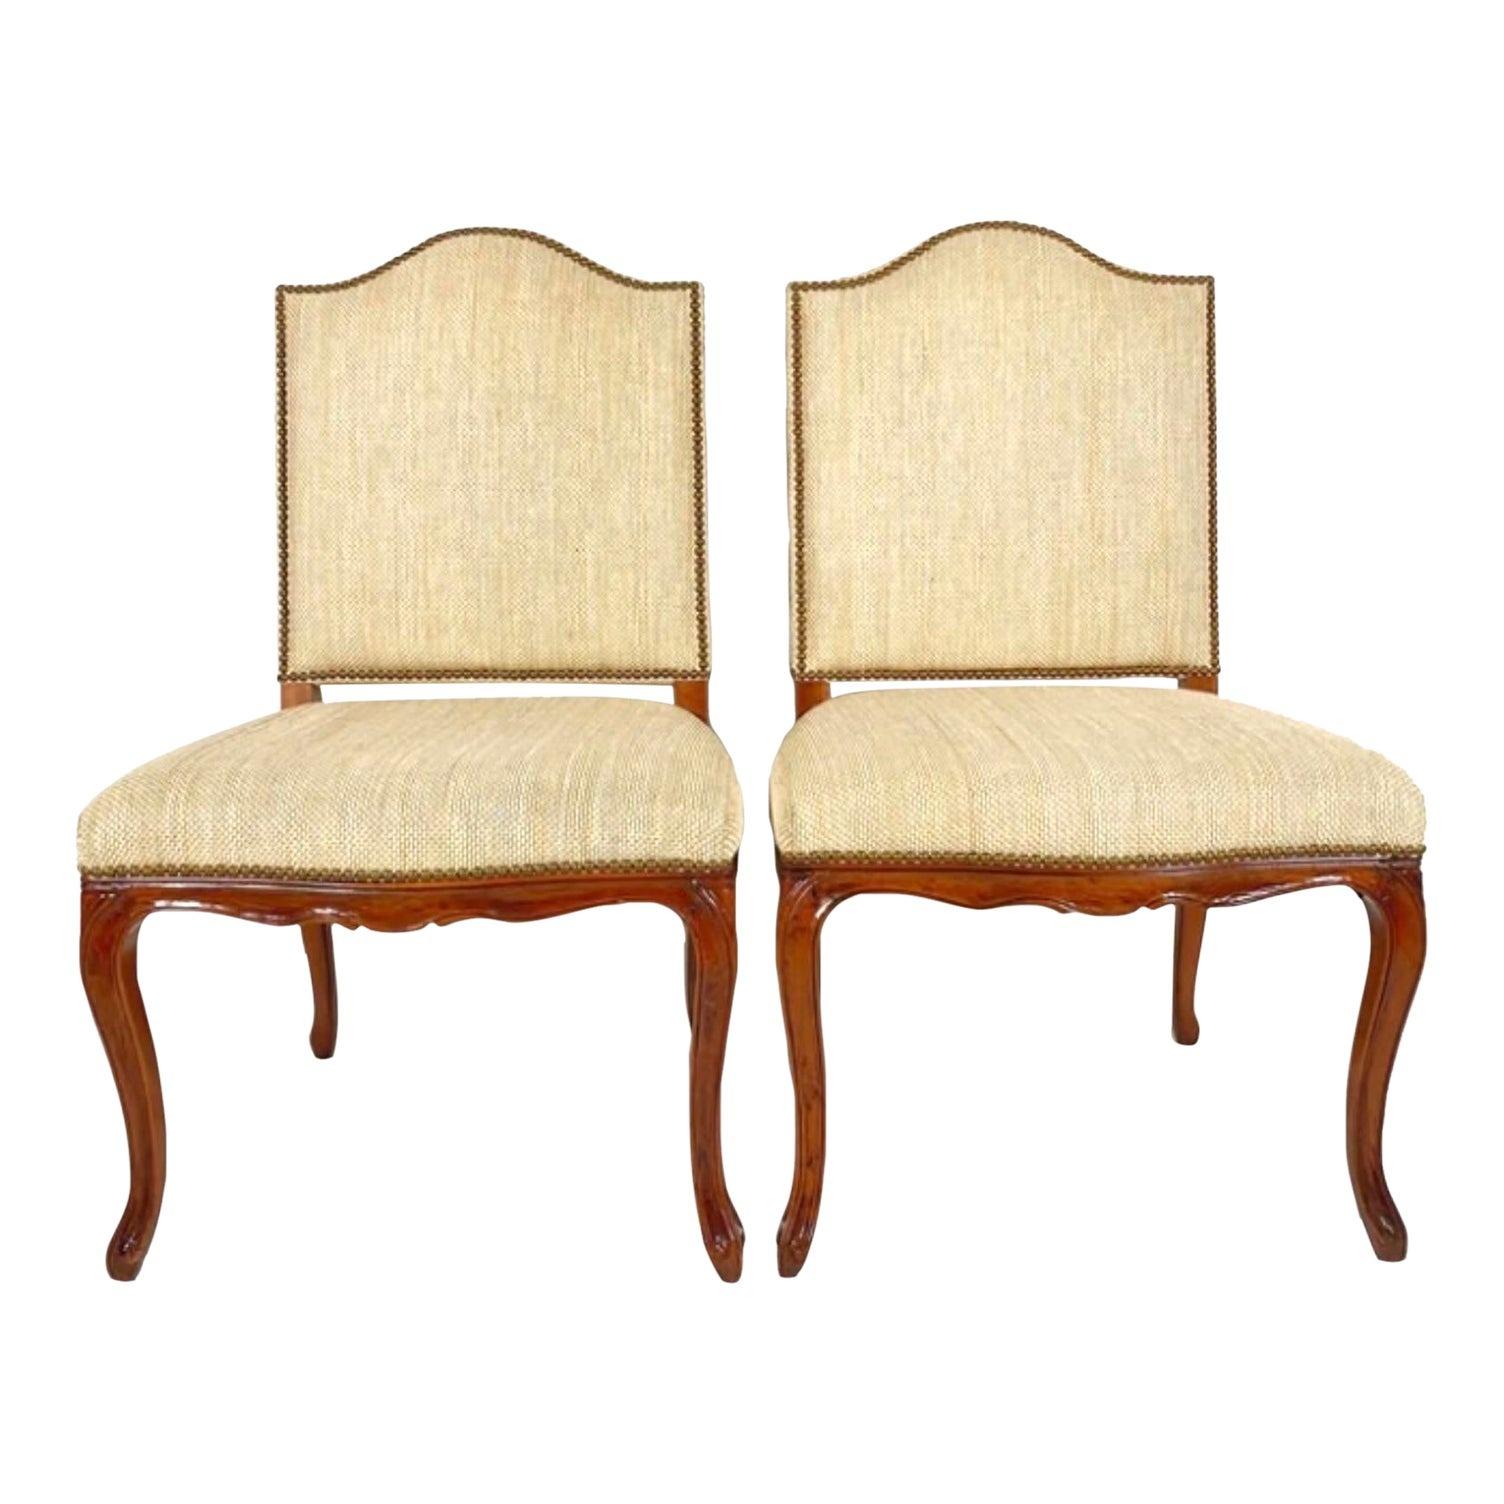 Vintage Regency Niermann Weeks Beistellstühle im Regency-Stil - ein Paar